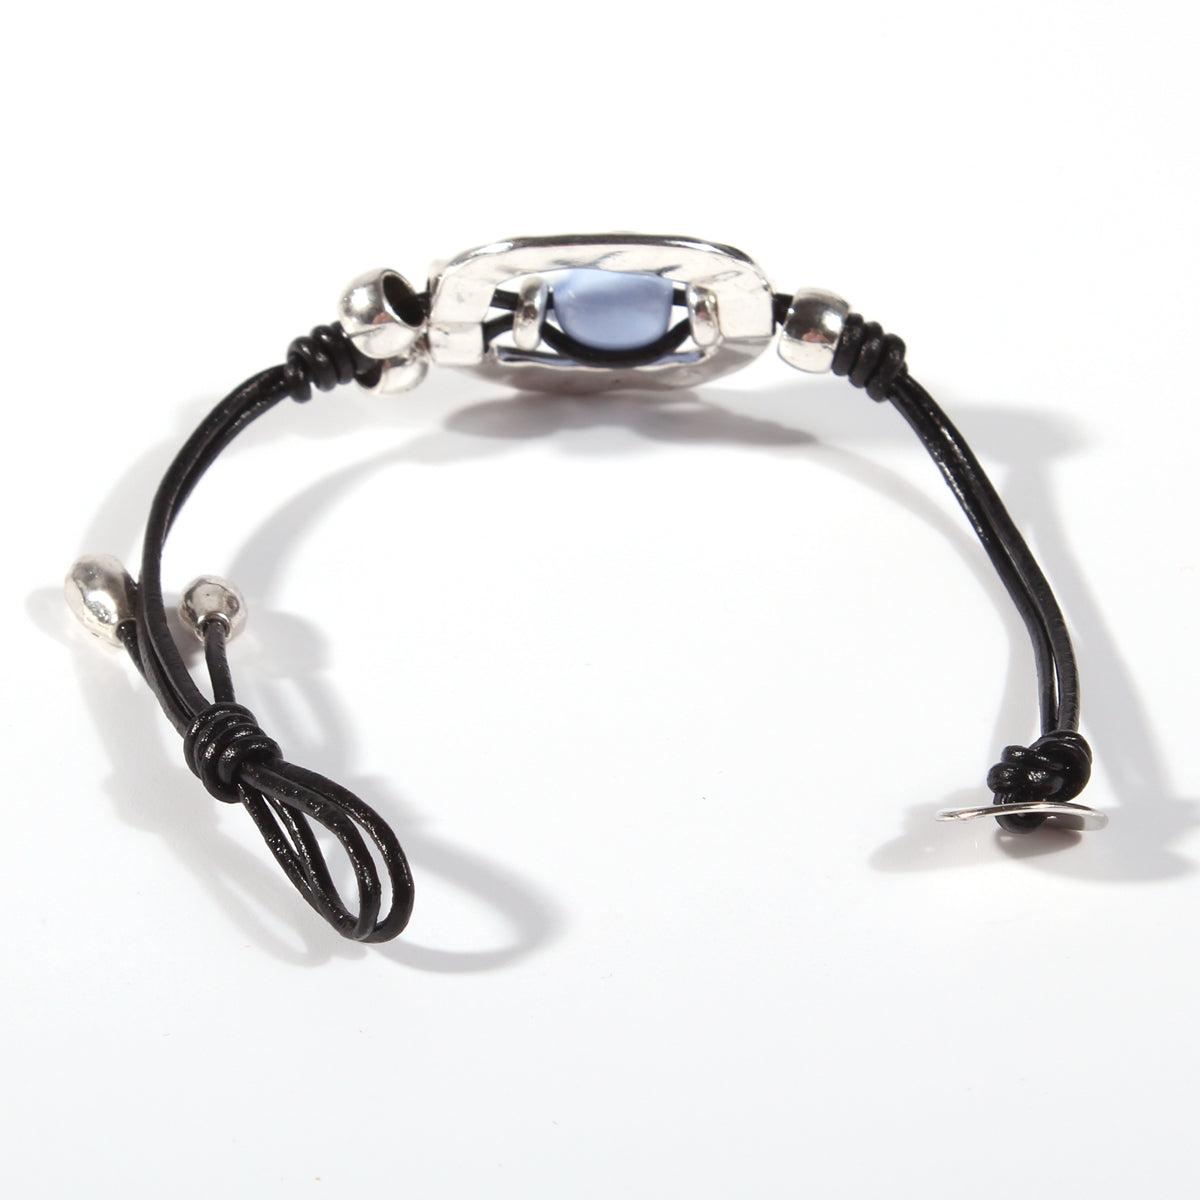 Genuine leather handmade women's bracelet MBR-05 Randomly